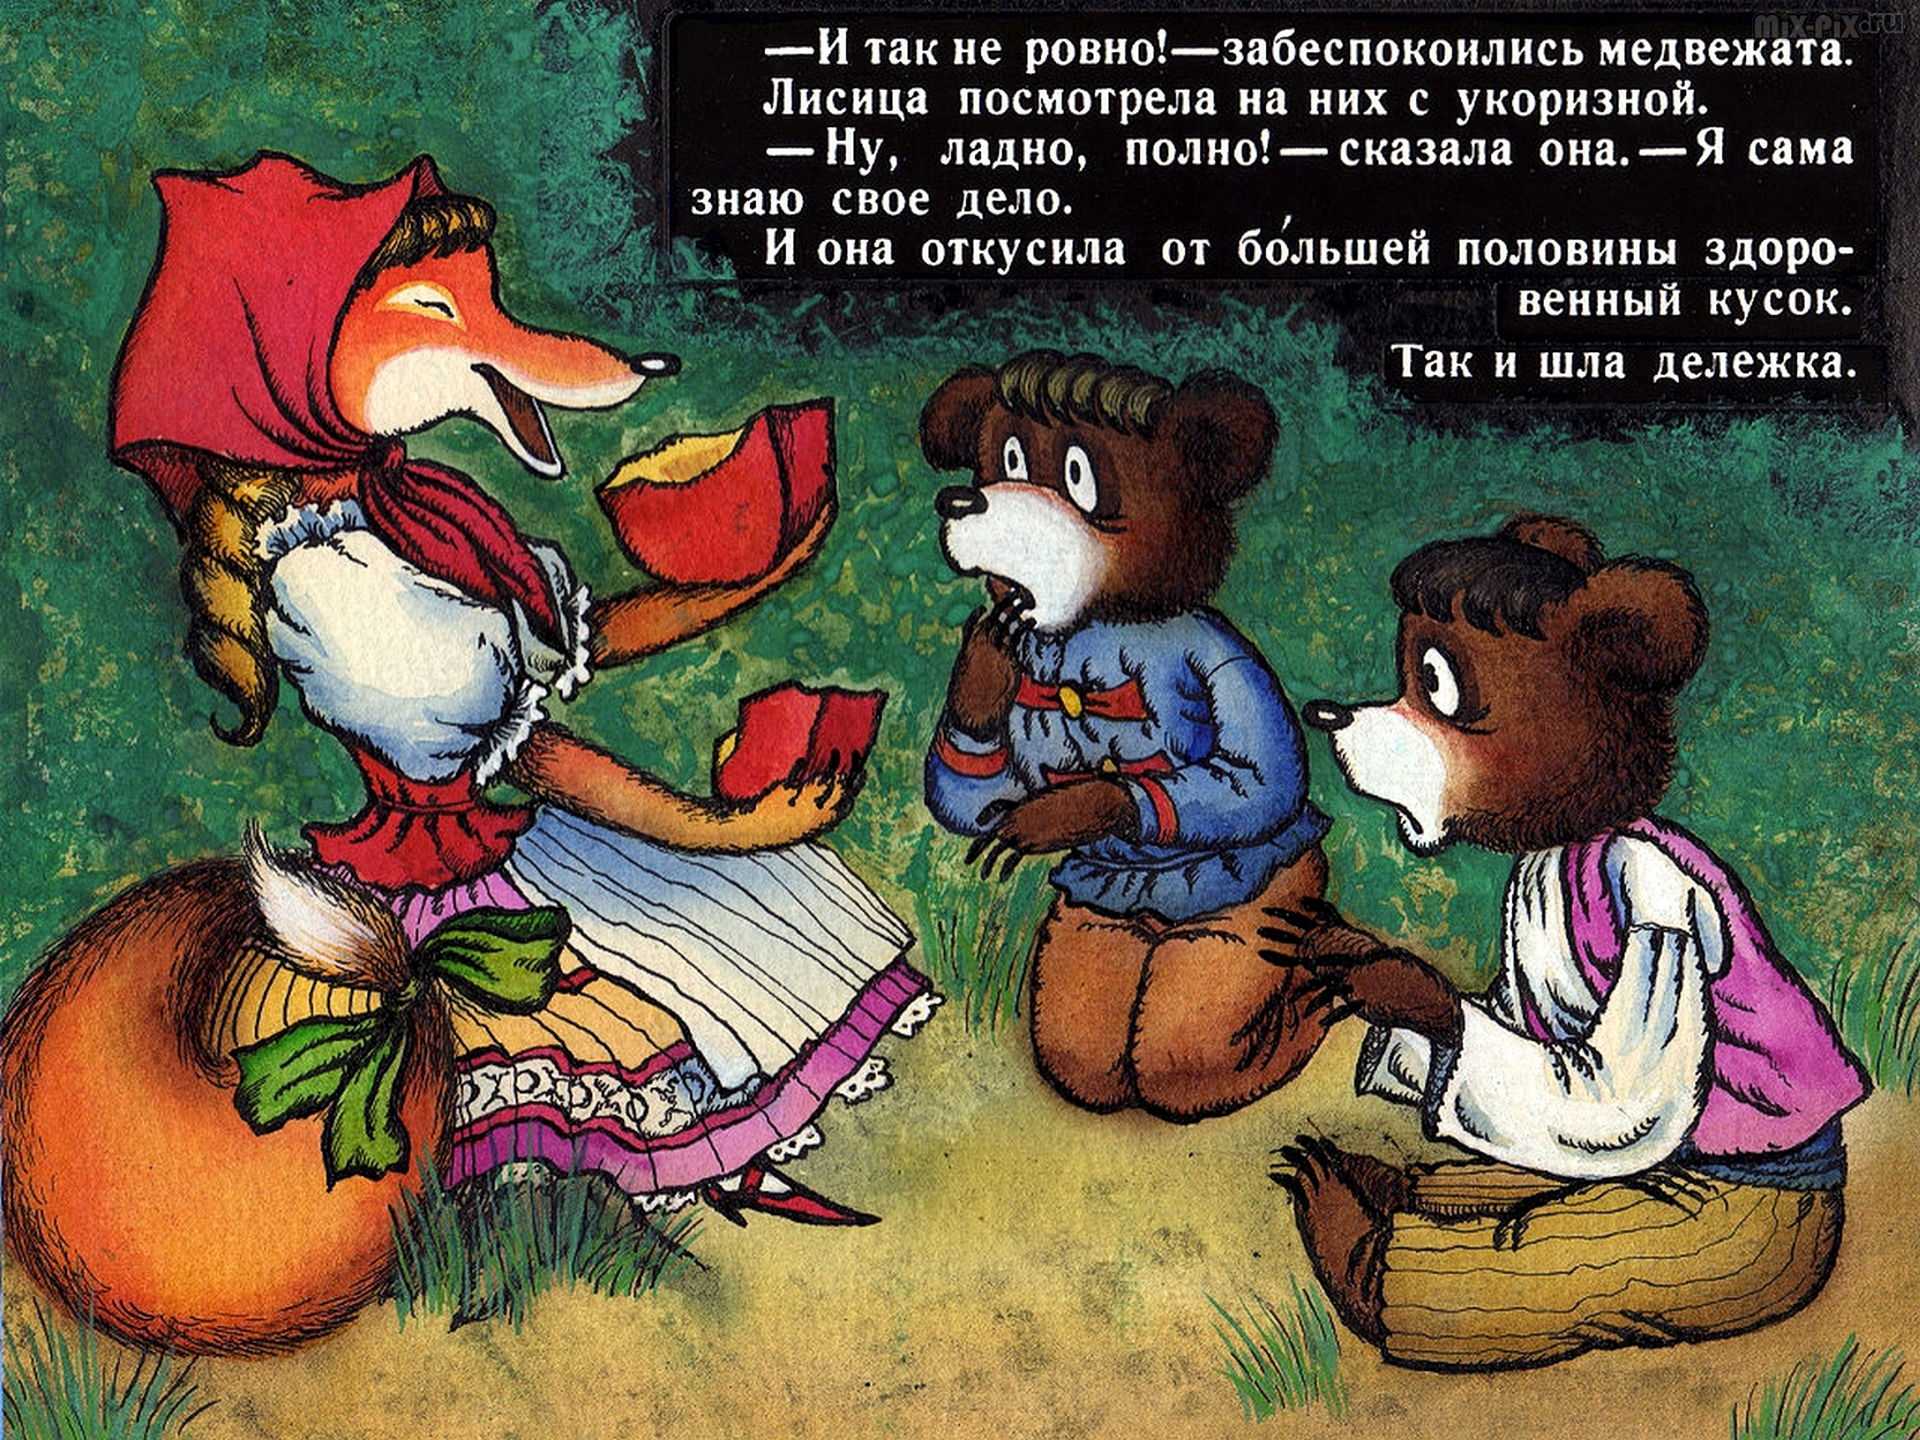 Лис и медведь читать. Венгерская сказка 2 жадных медвежонка. Сказка 2 жадных медвежонка. Венгерская сказка два жадных Медв. Два жадных медвежонка венгерская народная сказка.